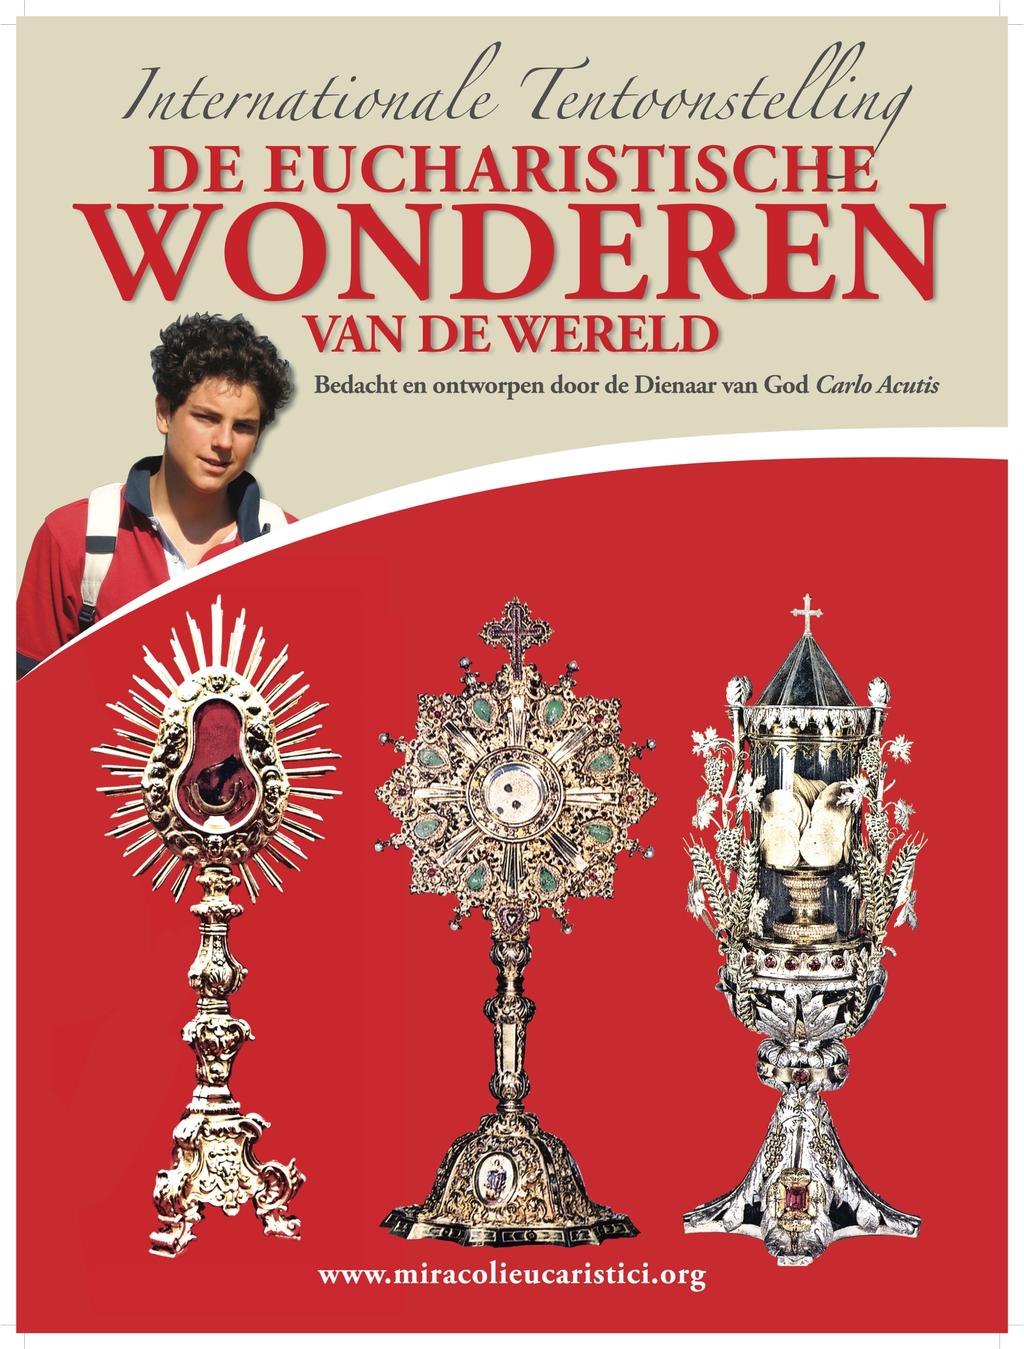 Op zondag 28 oktober zal de tentoonstelling worden afgesloten door de Hoogwaardige Heer Abt Marc Fierens, sinds februari 2018 Abt van de Norbertijnenabdij van Averbode.